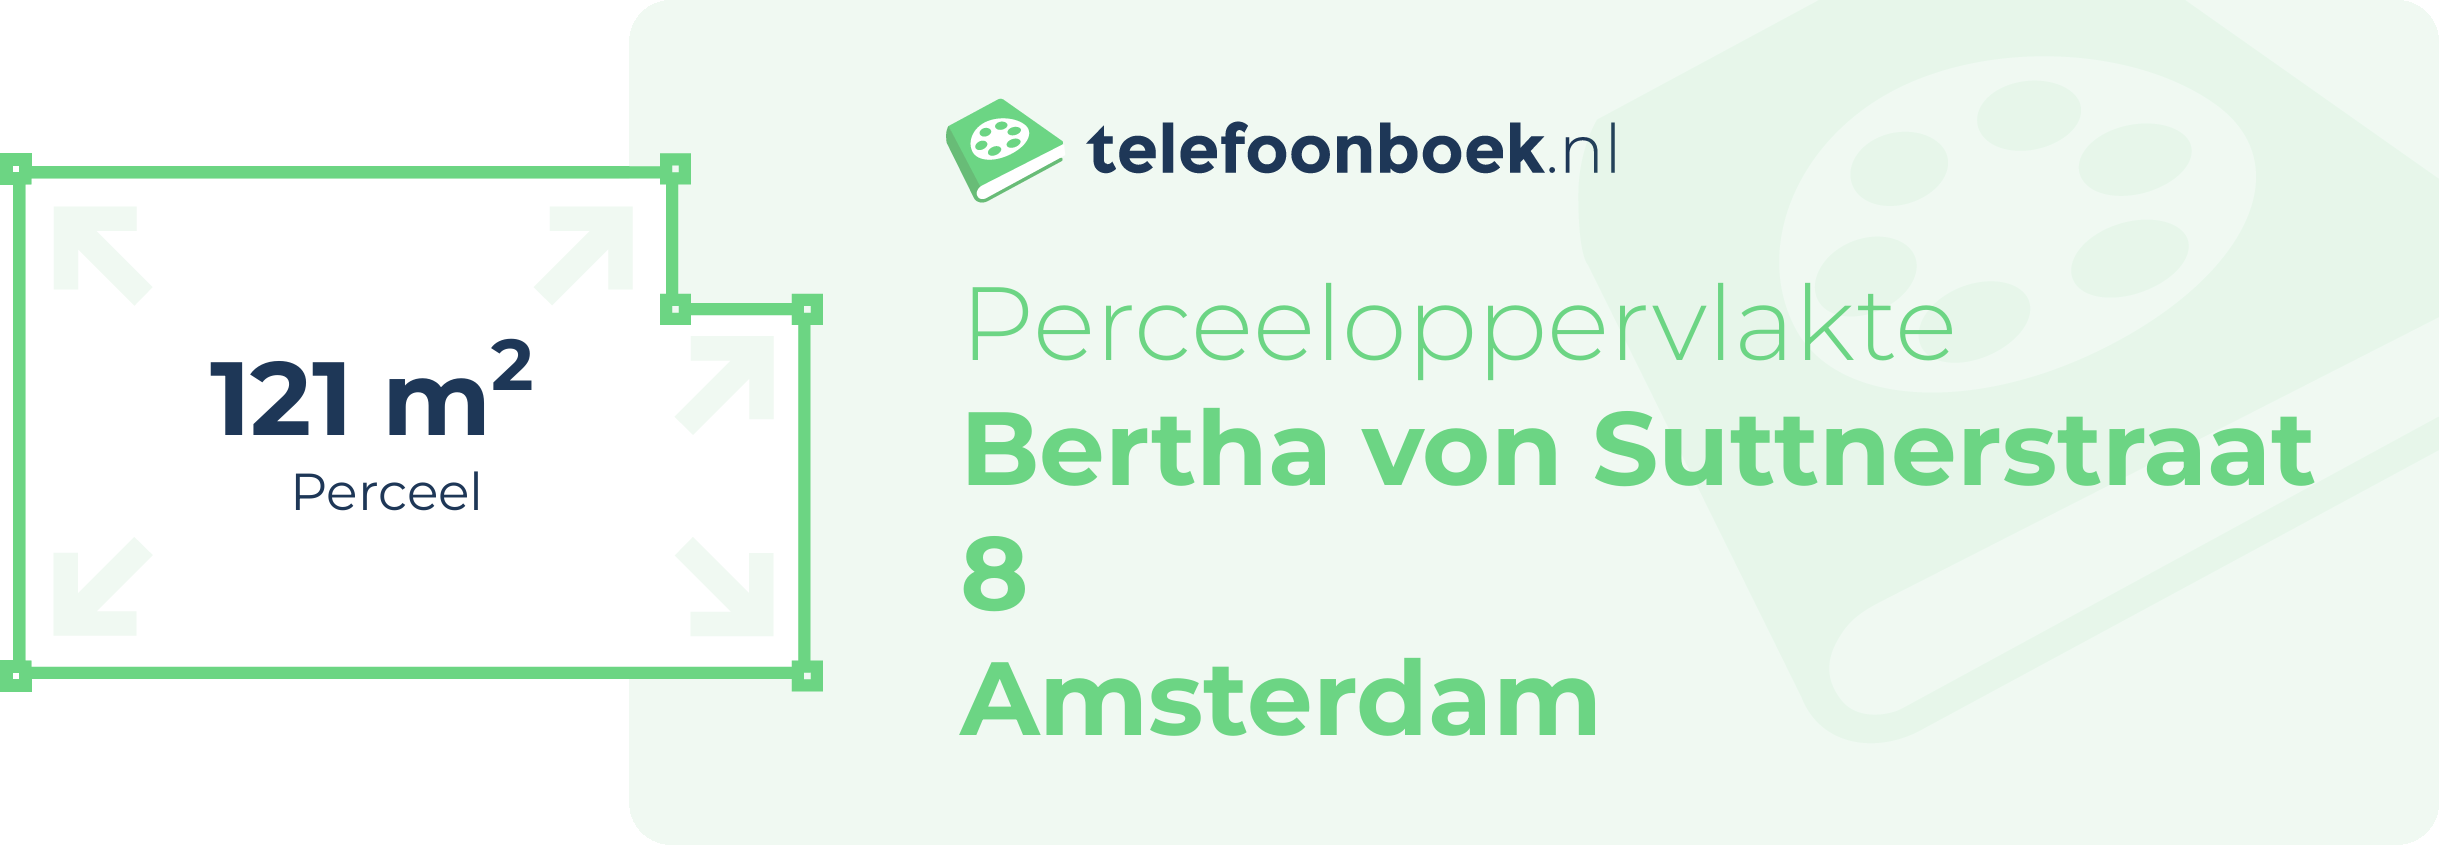 Perceeloppervlakte Bertha Von Suttnerstraat 8 Amsterdam